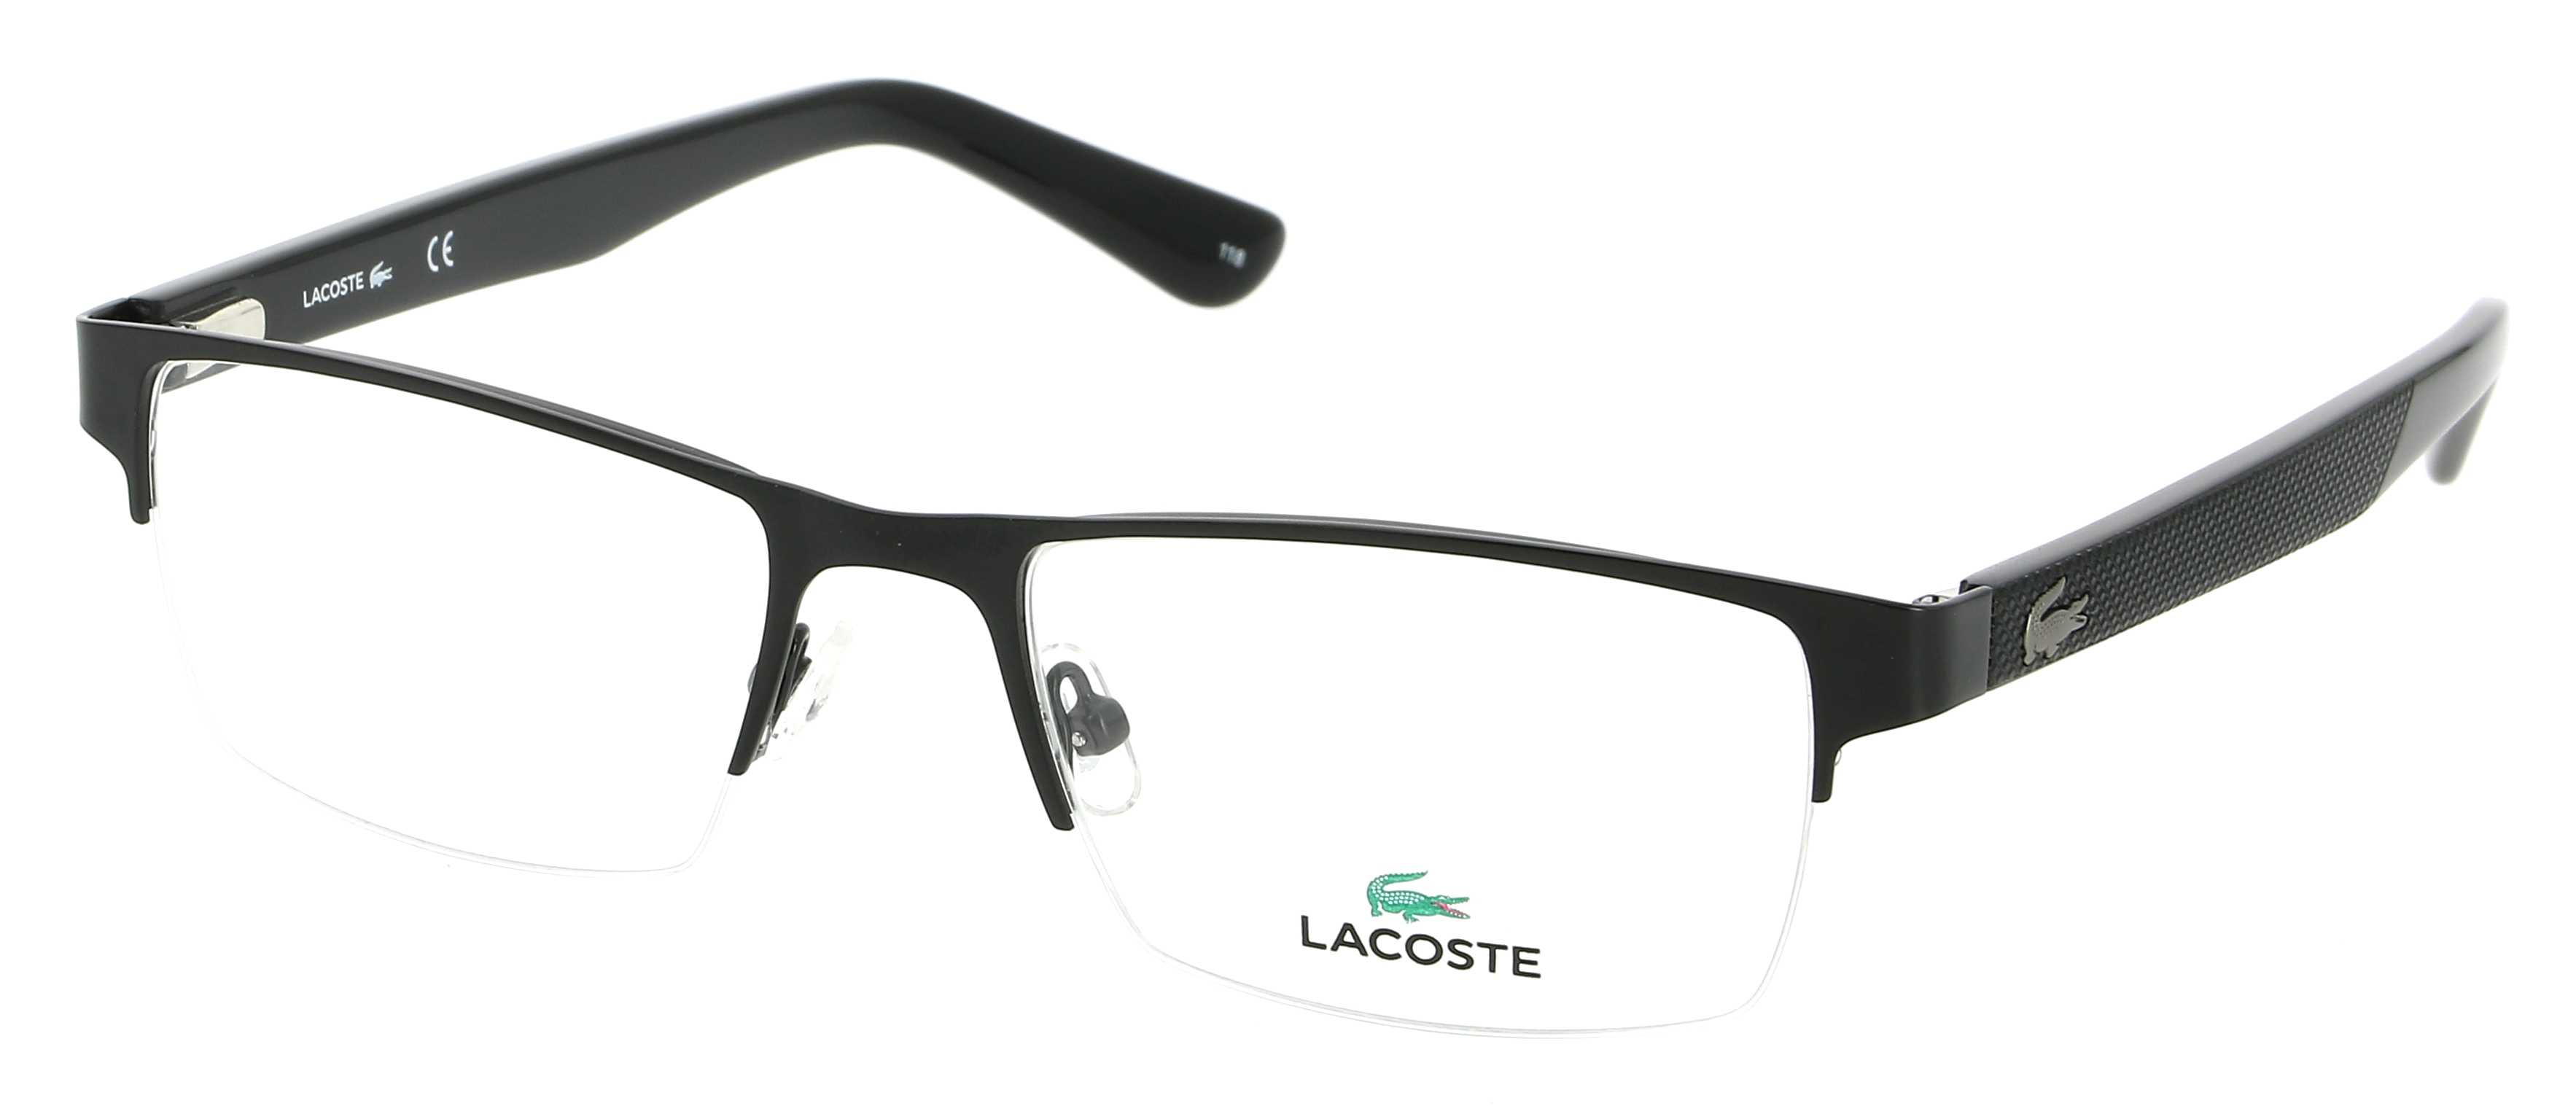 lacoste glasses canada